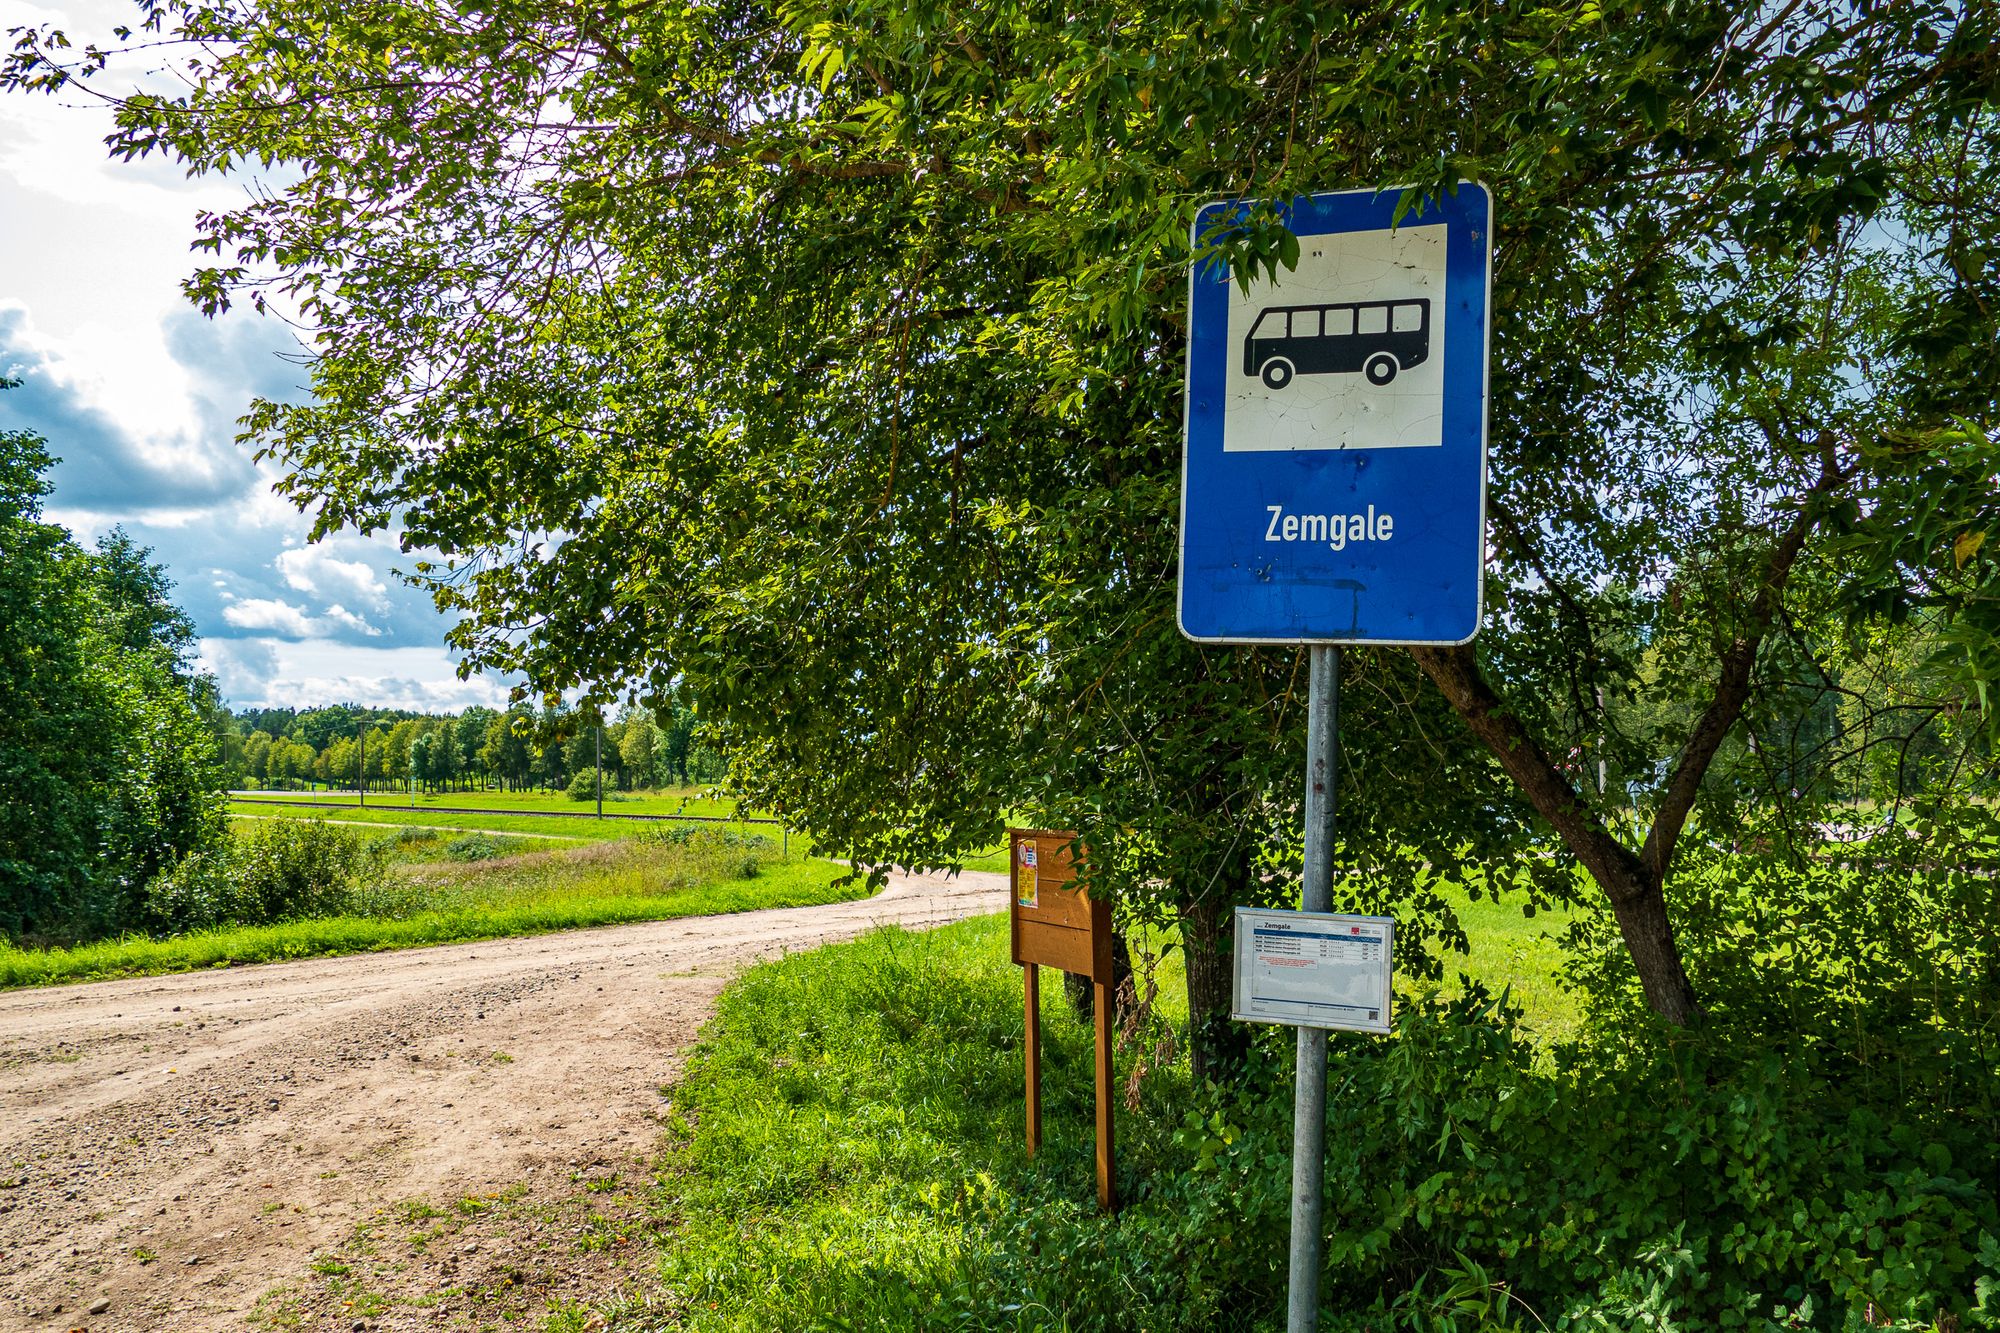 Bushaltestelle in Zemgale mit Schild und Busfahrplan